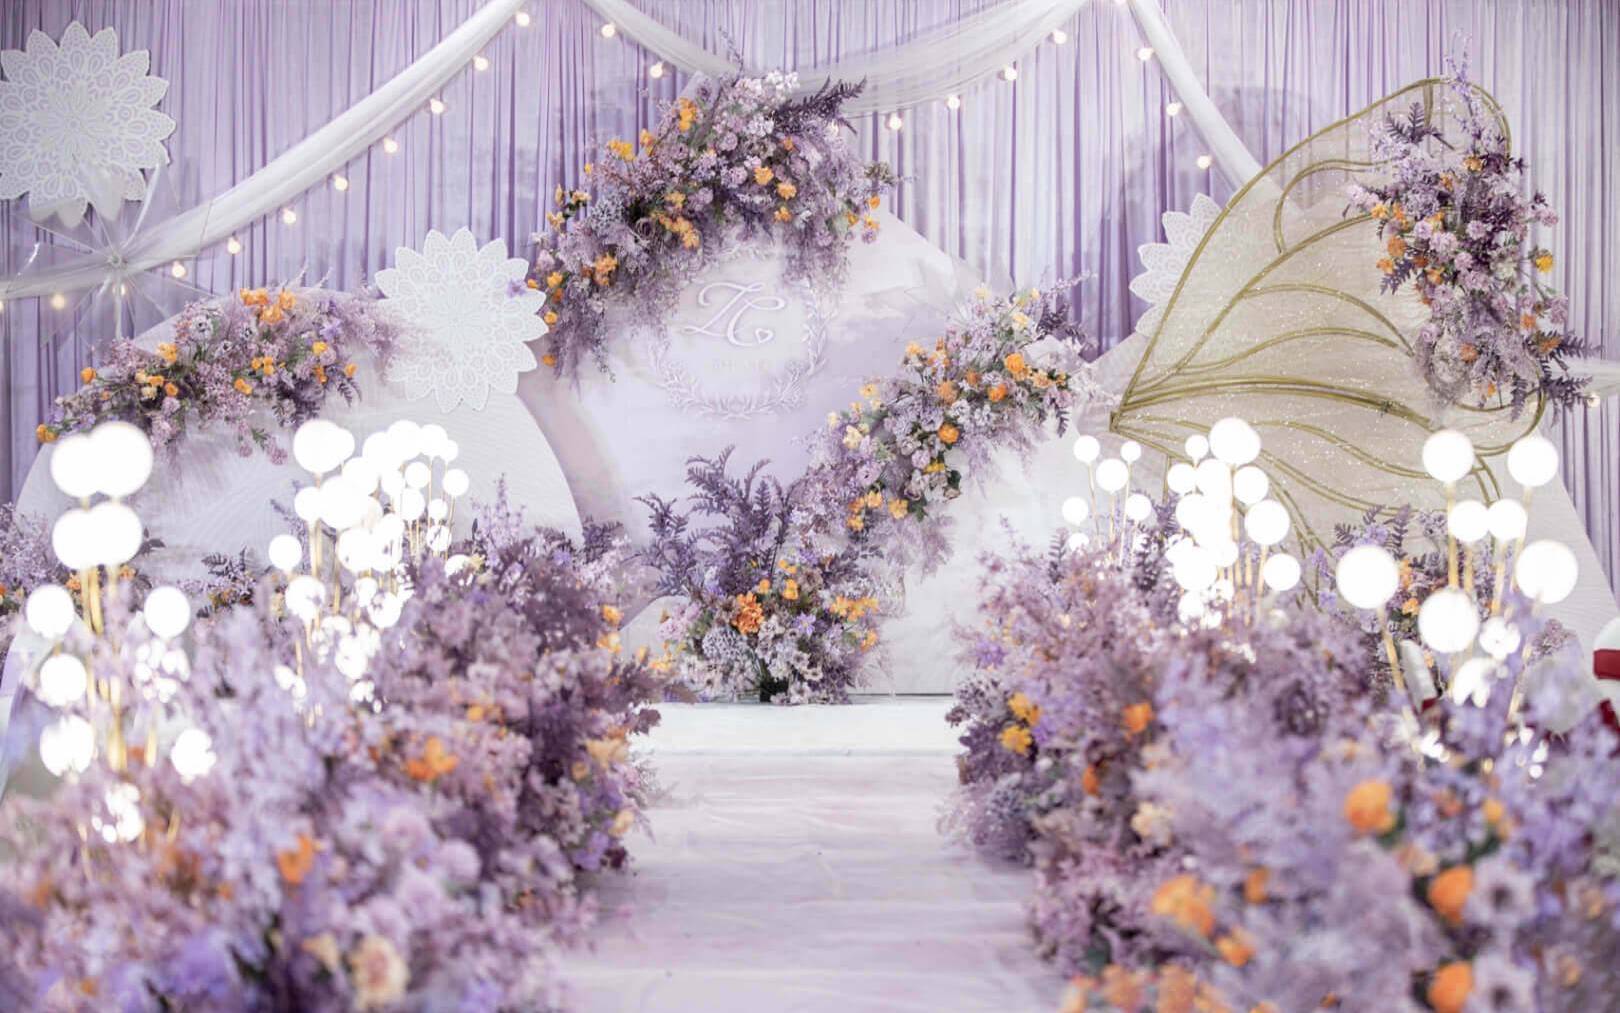  「薇薇新娘」室内主题婚礼一简约浪漫紫色系婚礼